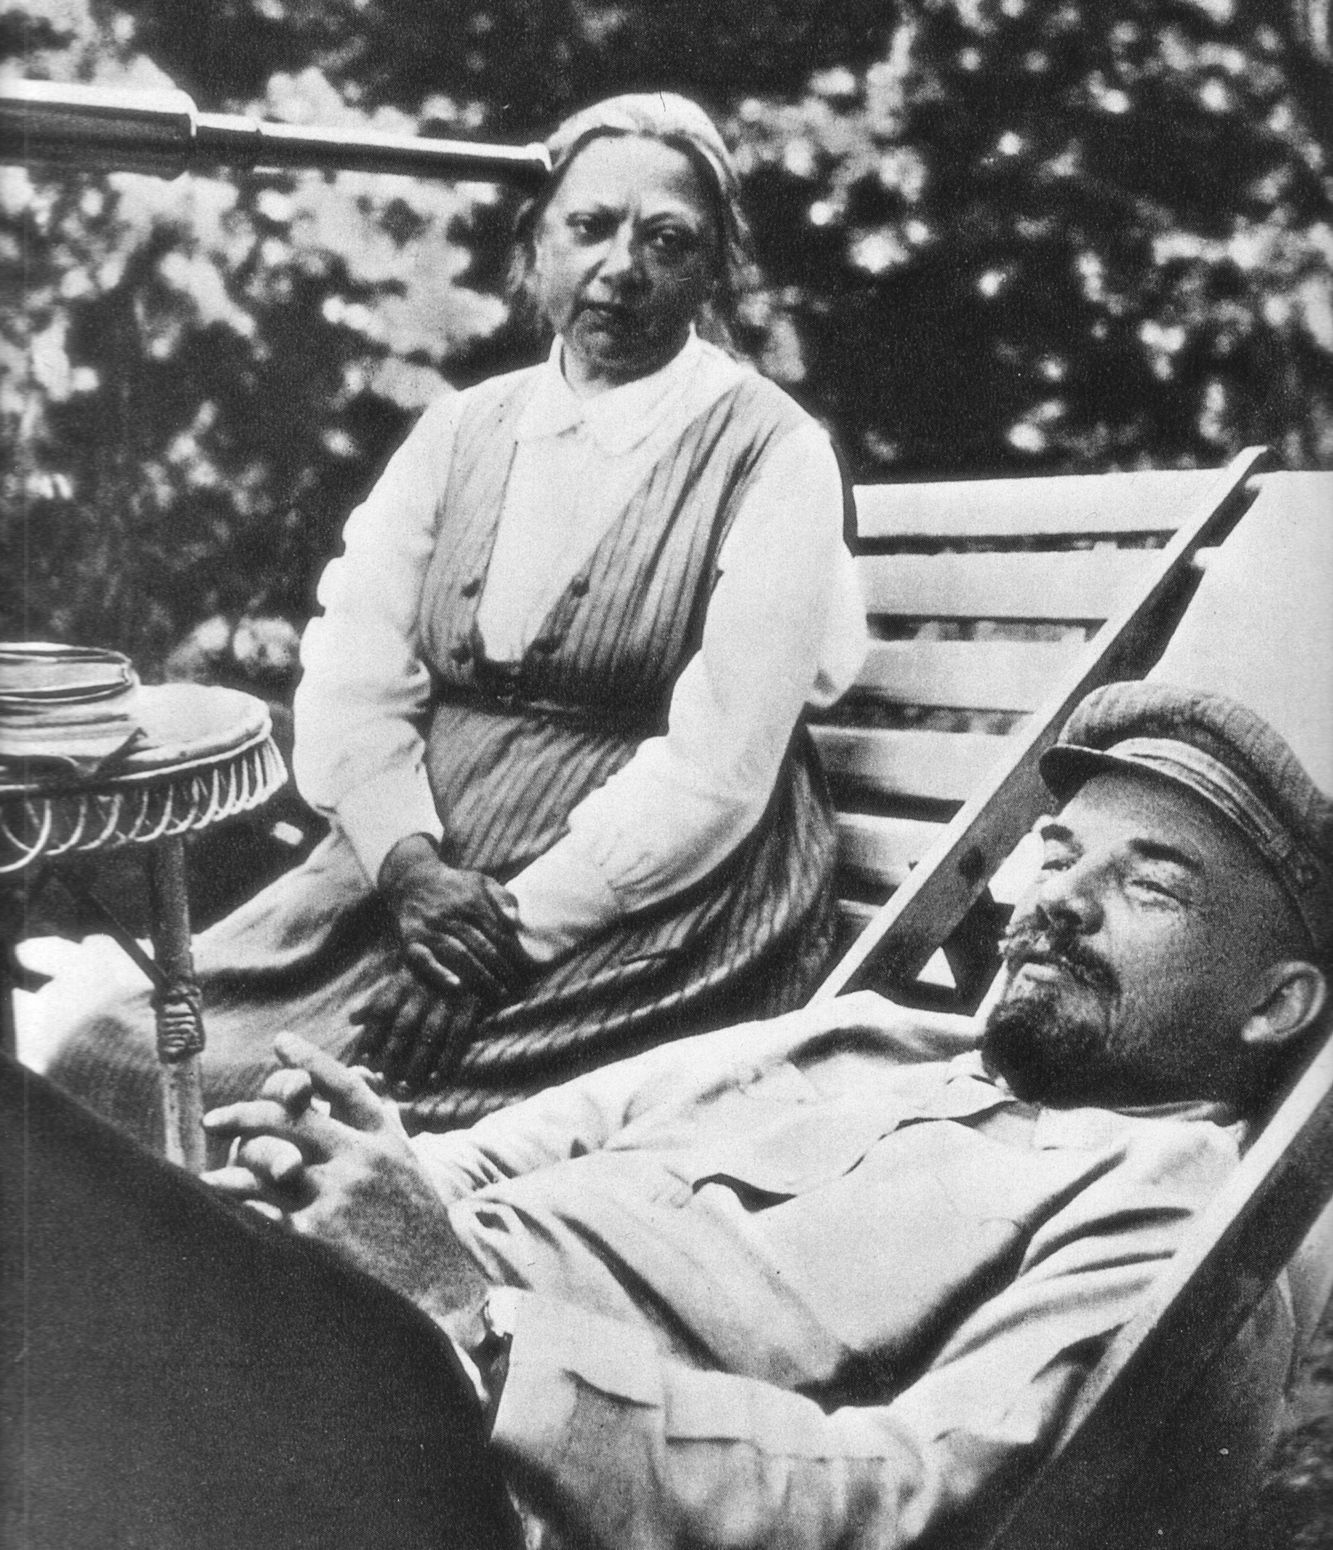 W podróży pociągiem przez Europę Leninowi towarzyszyła m.in. jego małżonka Nadieżda Krupska. Na zdjęciu małżonkowie w 1922 roku. Fotografię wykonała Maria, najmłodsza siostra Lenina.